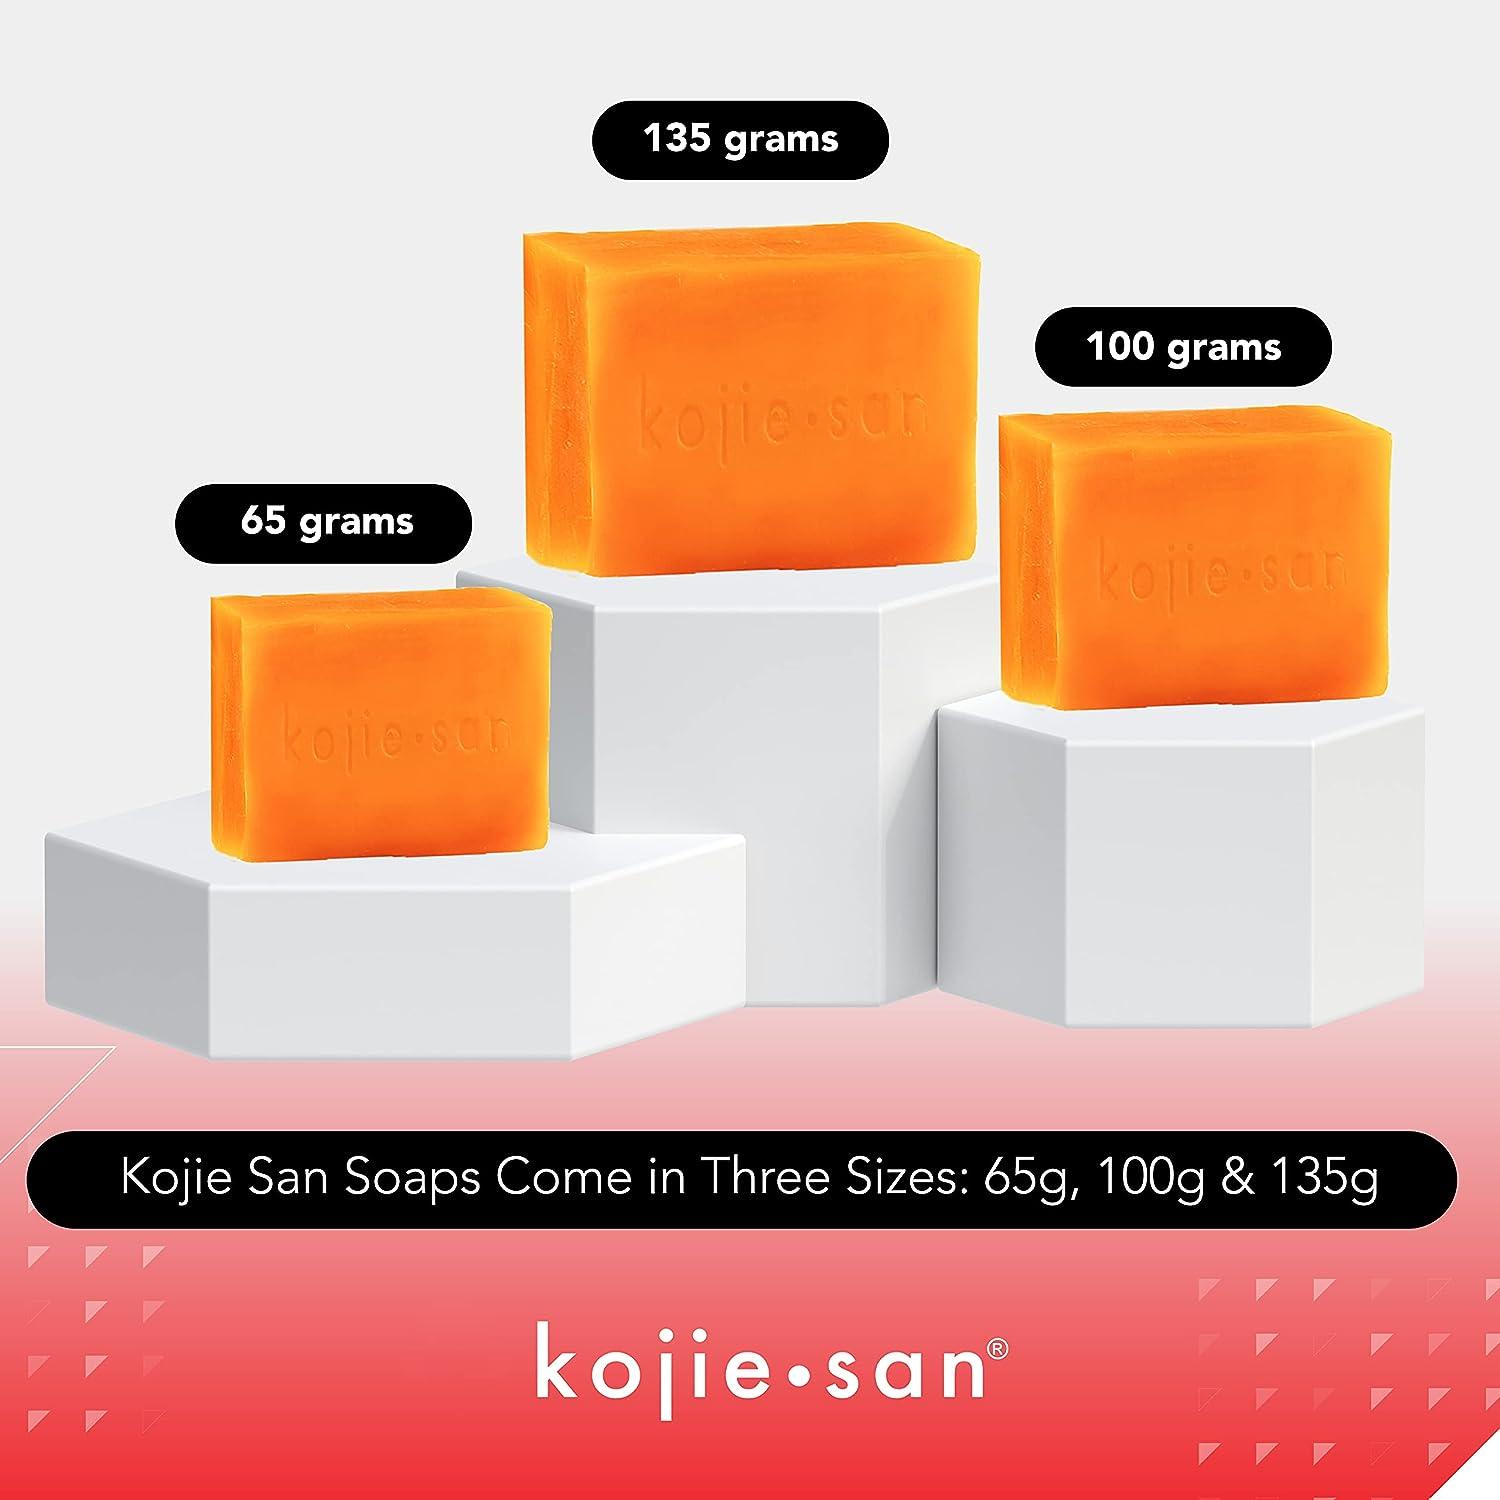 Kojie San Kojic Acid Soap - Pack of 2 (135g each) With 10 Black